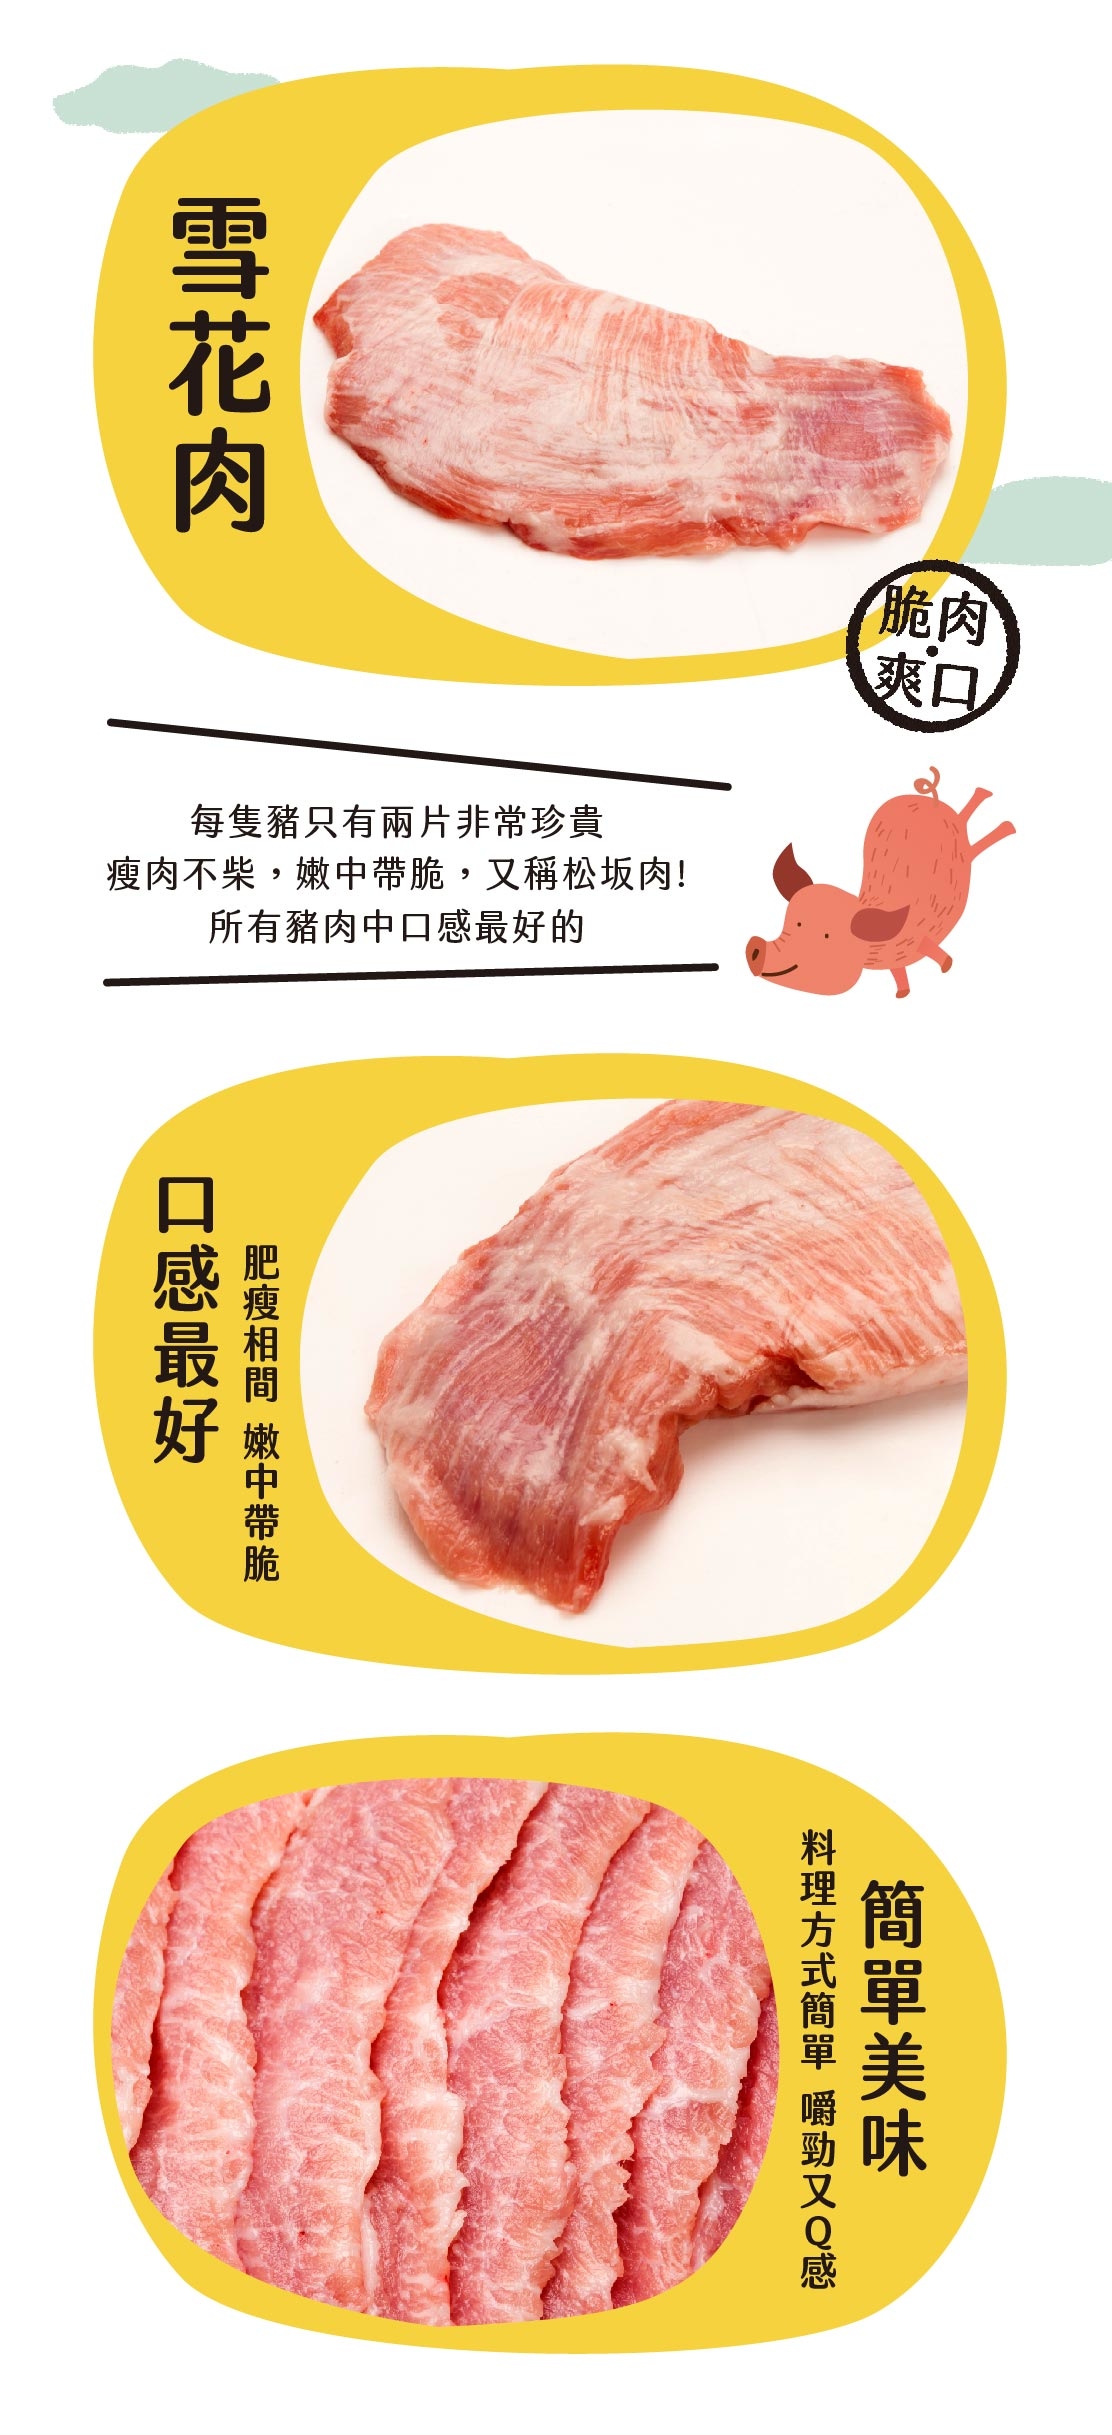 黑毛豬韓燒雪花肉 – Black Pig Hong Kong